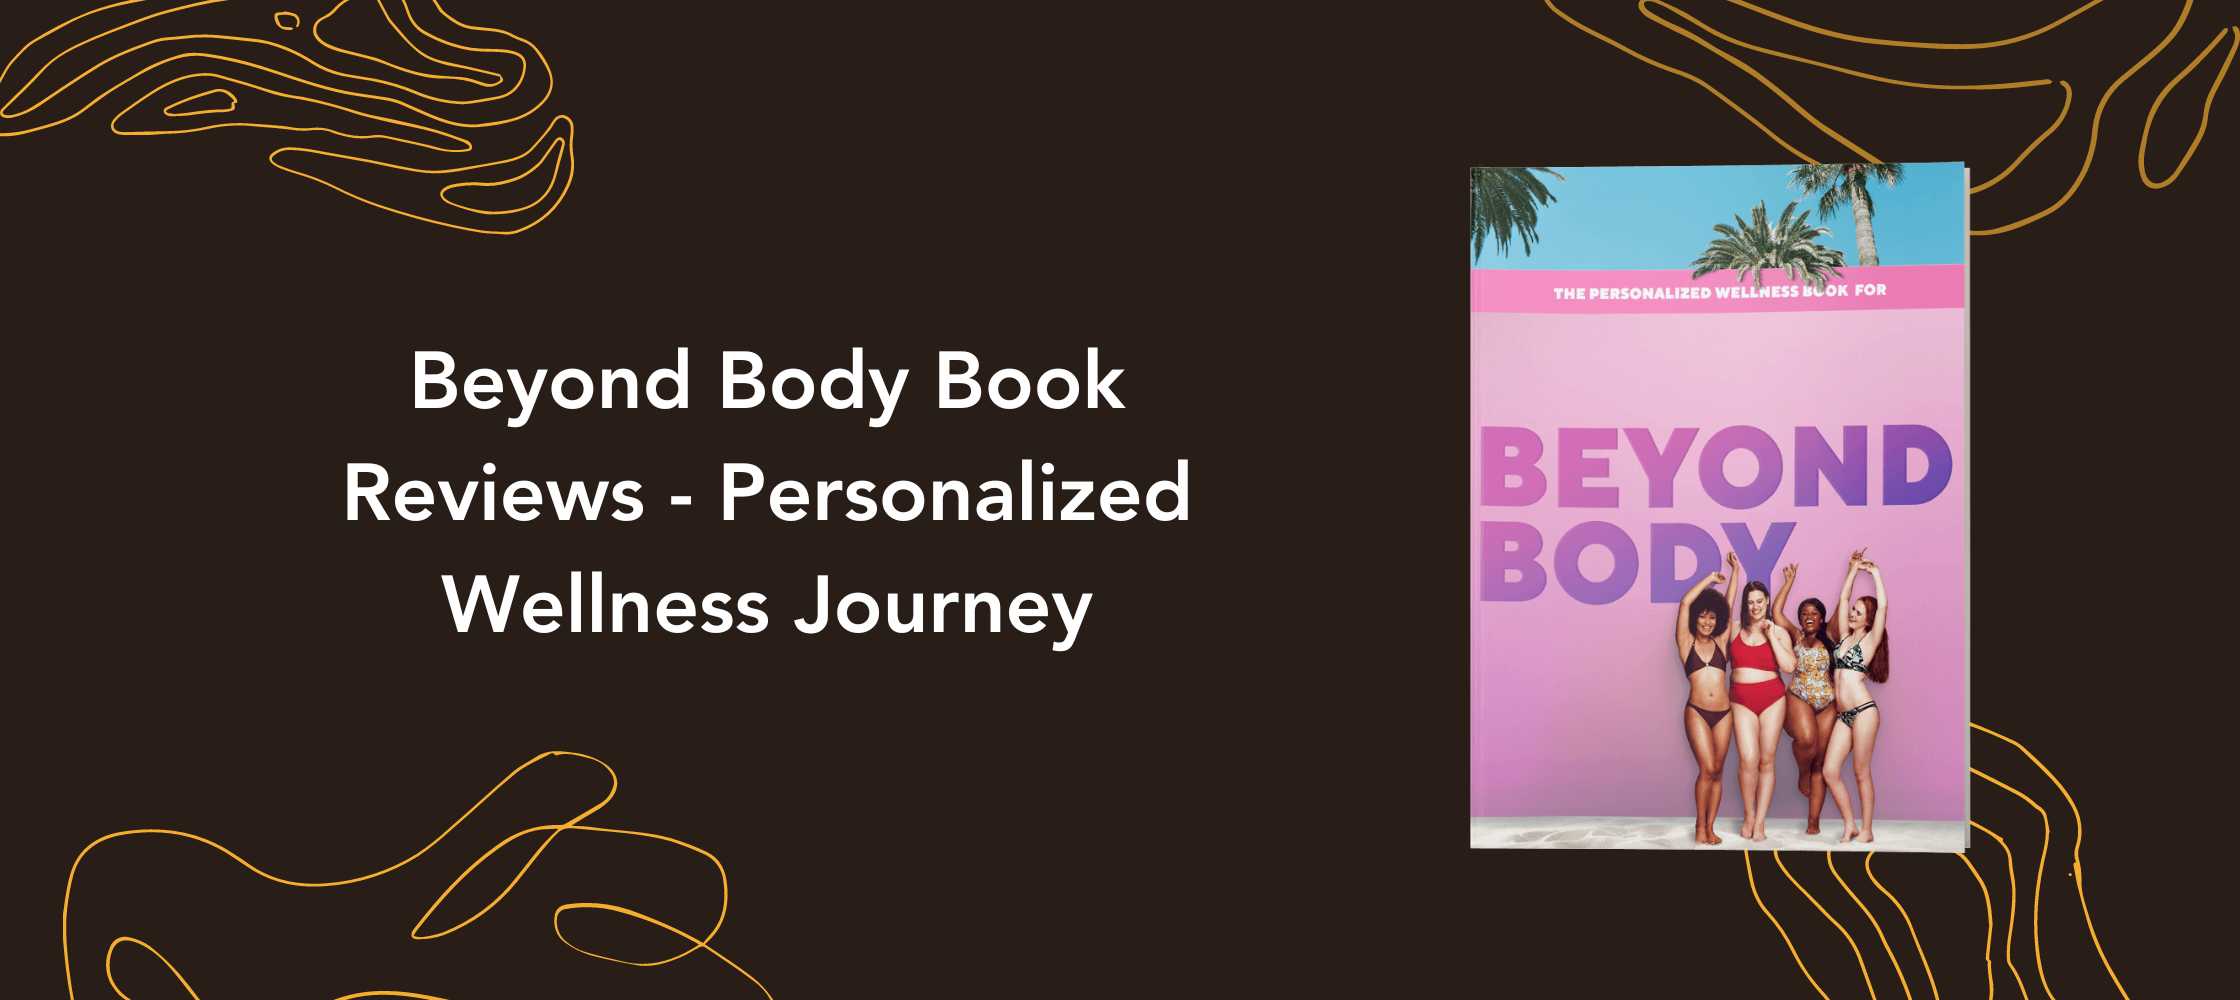 Beyond Body Book Reviews